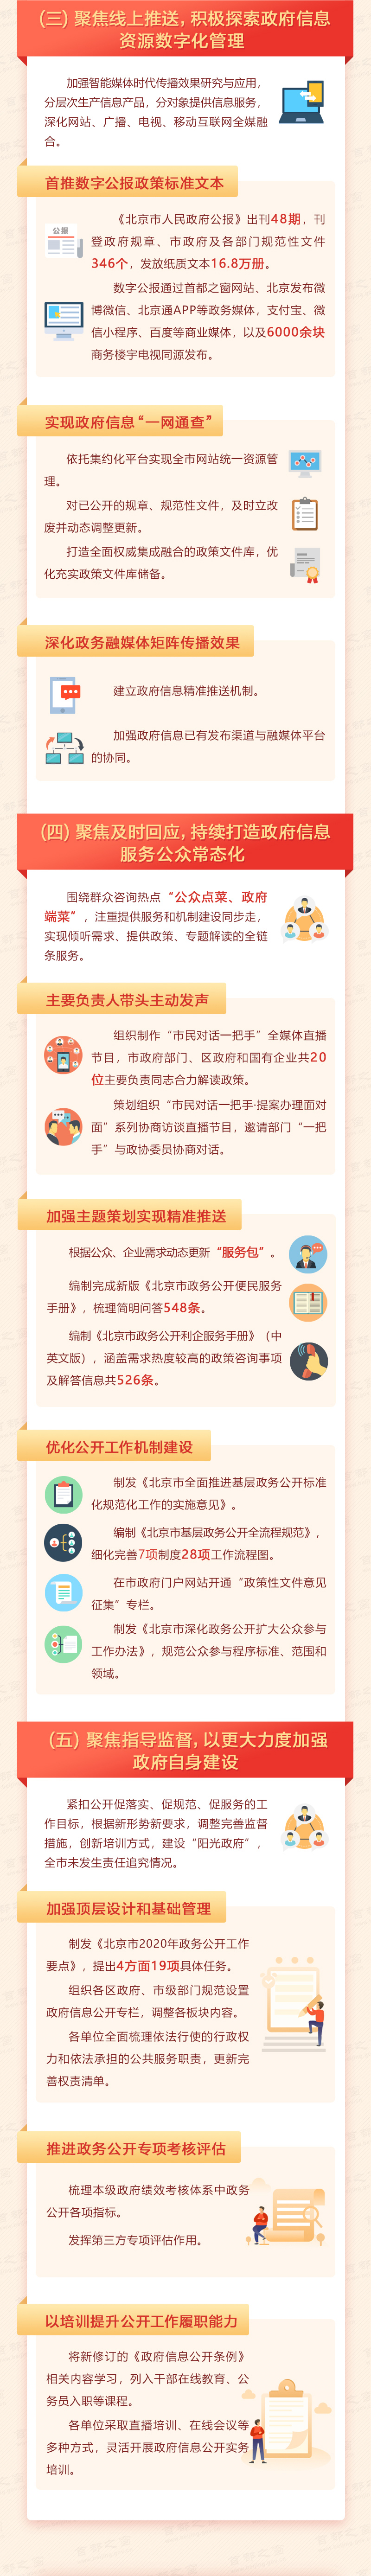 2020年北京市政府信息公开工作年度报告解读